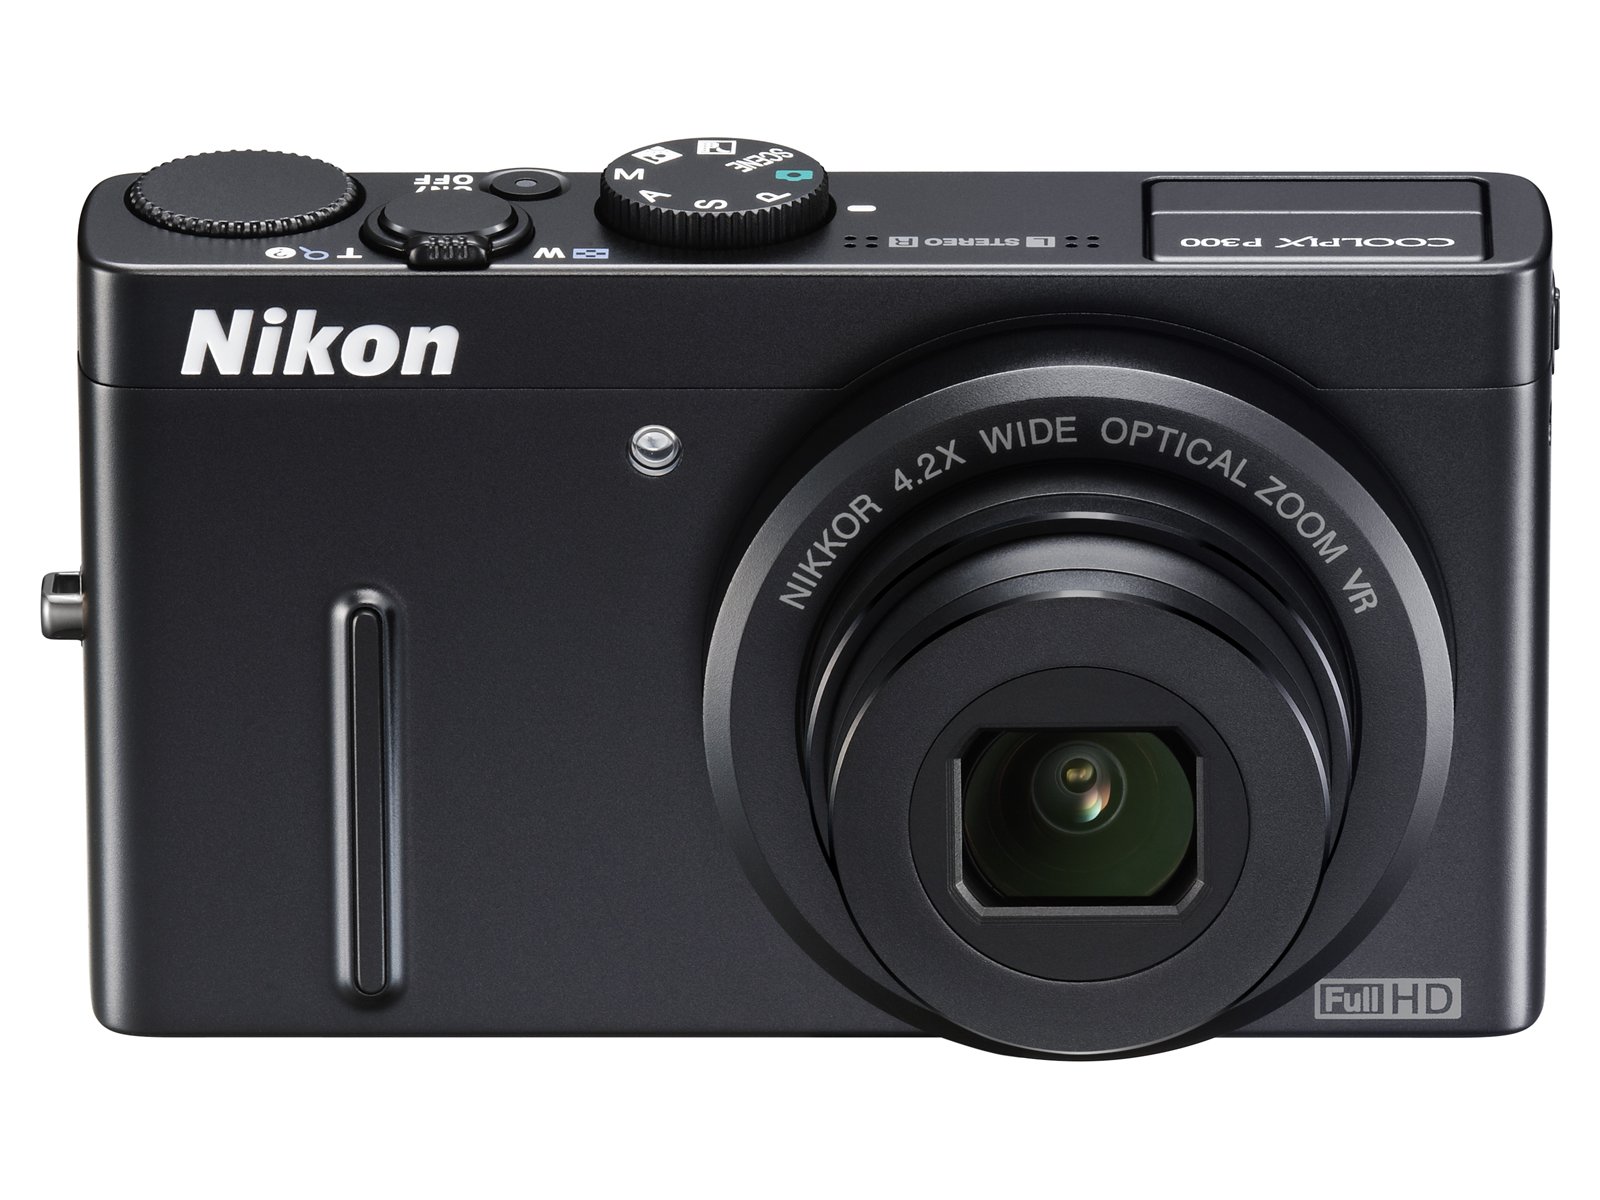 NikonデジタルカメラCOOLPIX P300 ブラックP300 1220万画素 裏面照射CMOS 広角24mm 光学4.2倍 F1.8レンズ フルHD